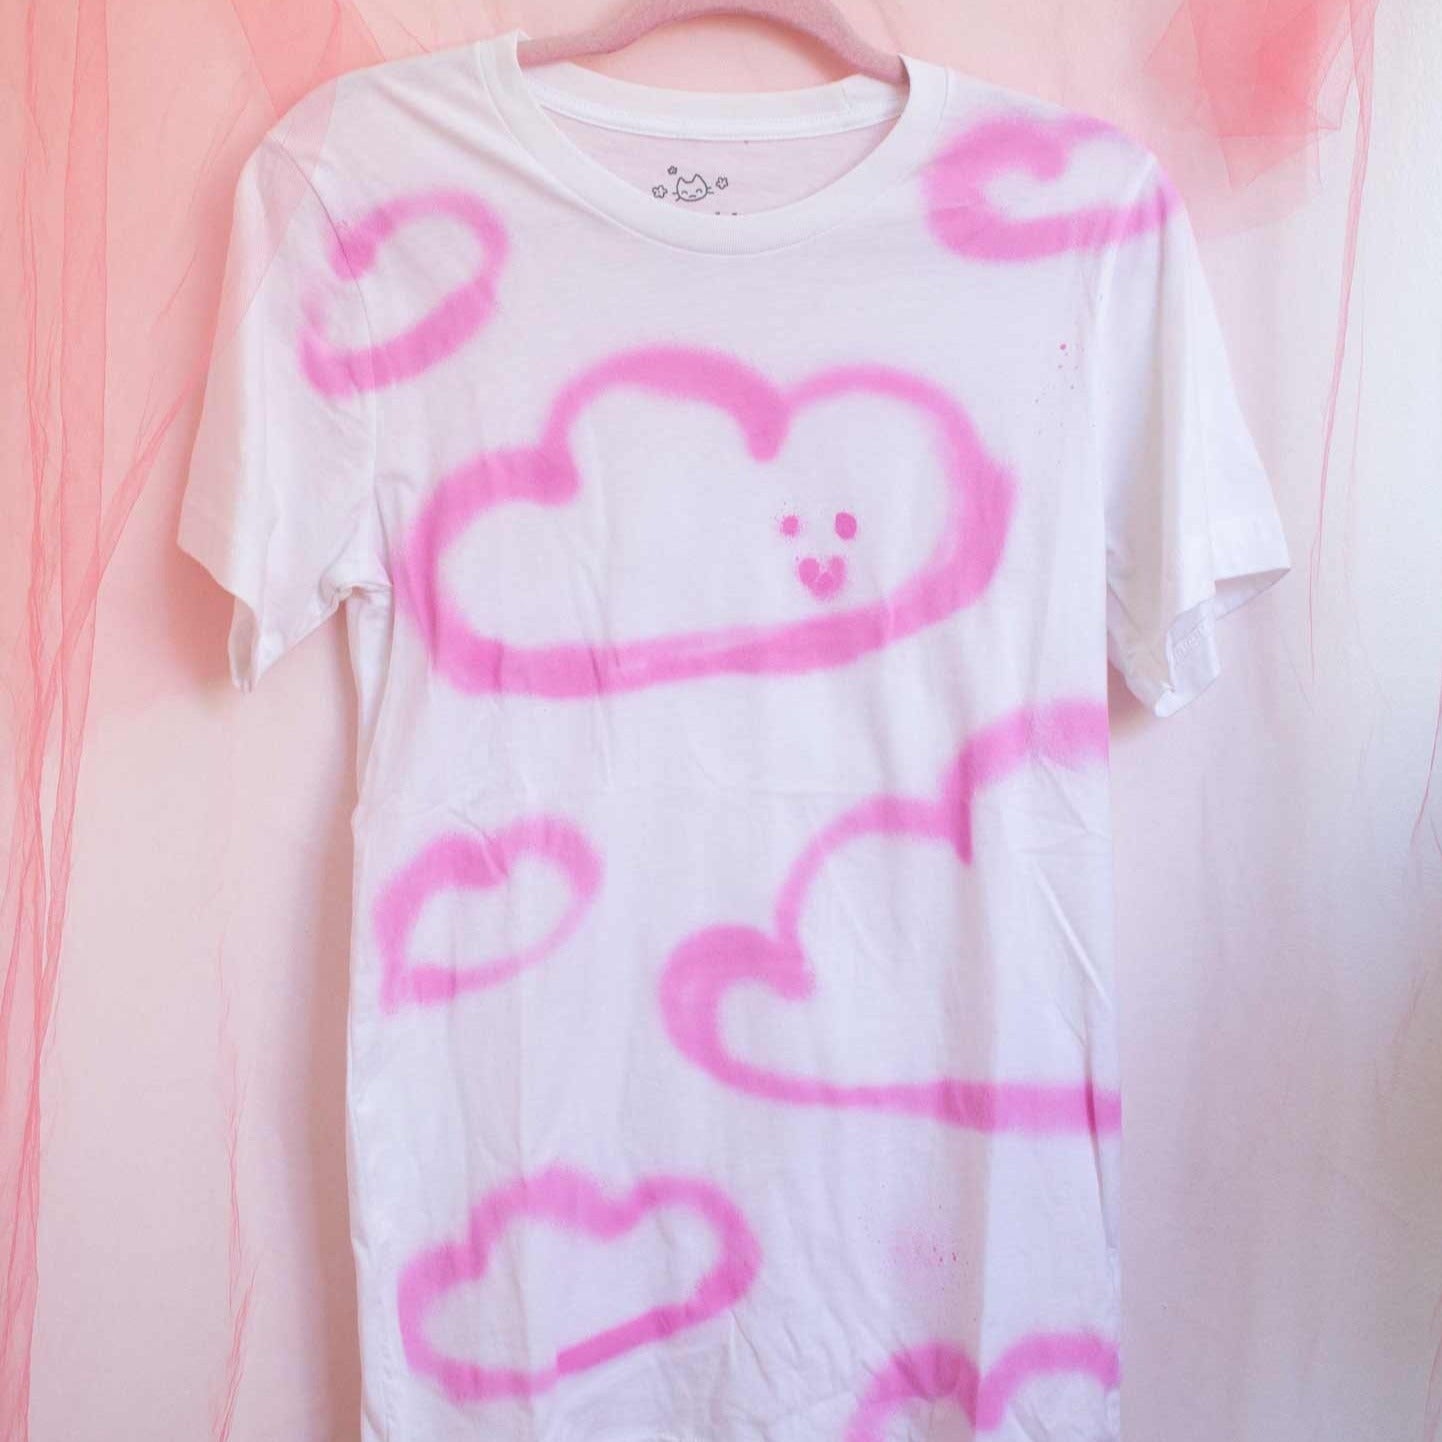 Photo du t-shirt blanc avec nuages roses peinturés à l'aérosol